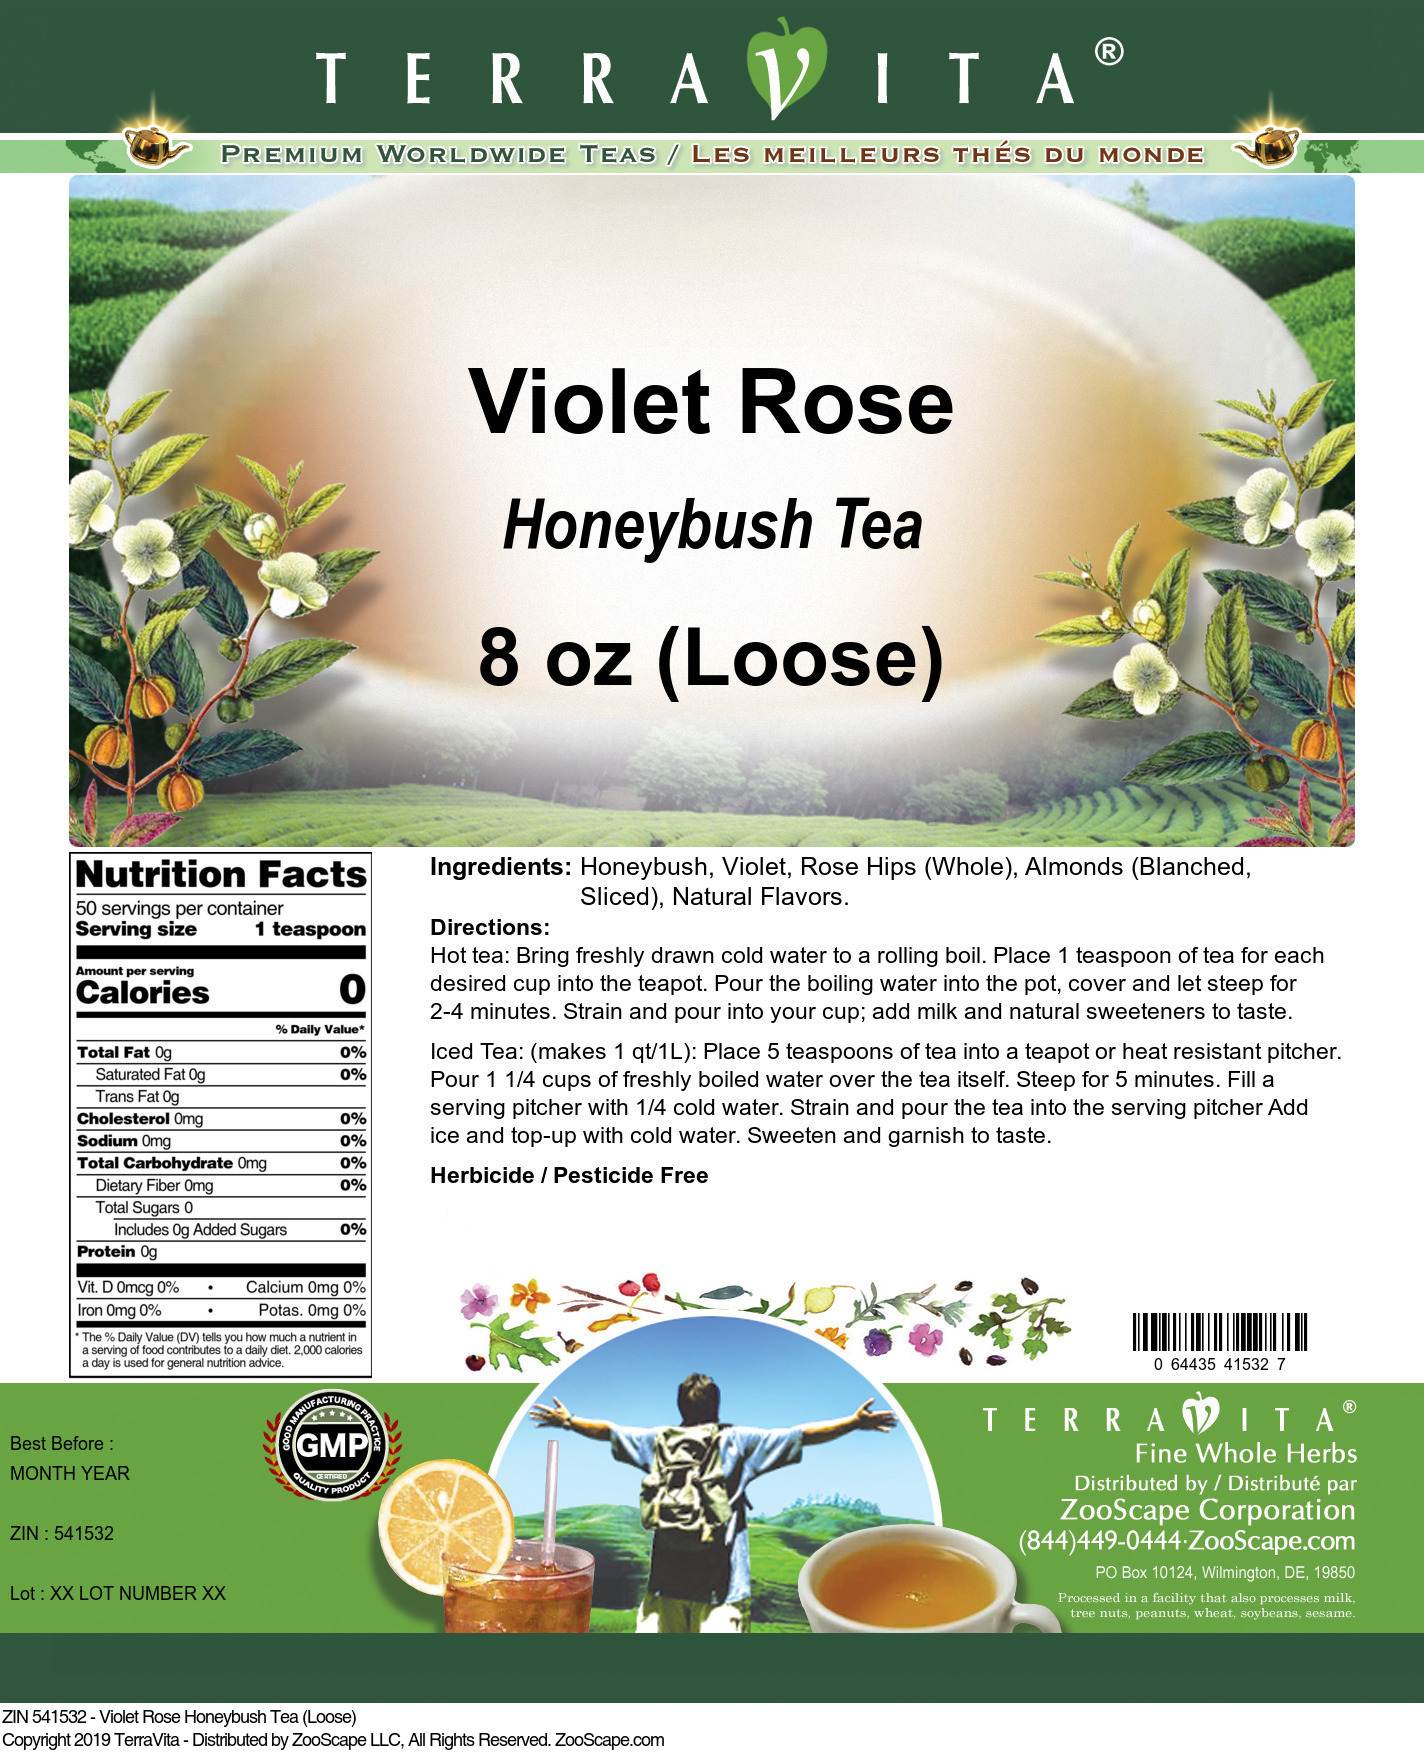 Violet Rose Honeybush Tea (Loose) - Label